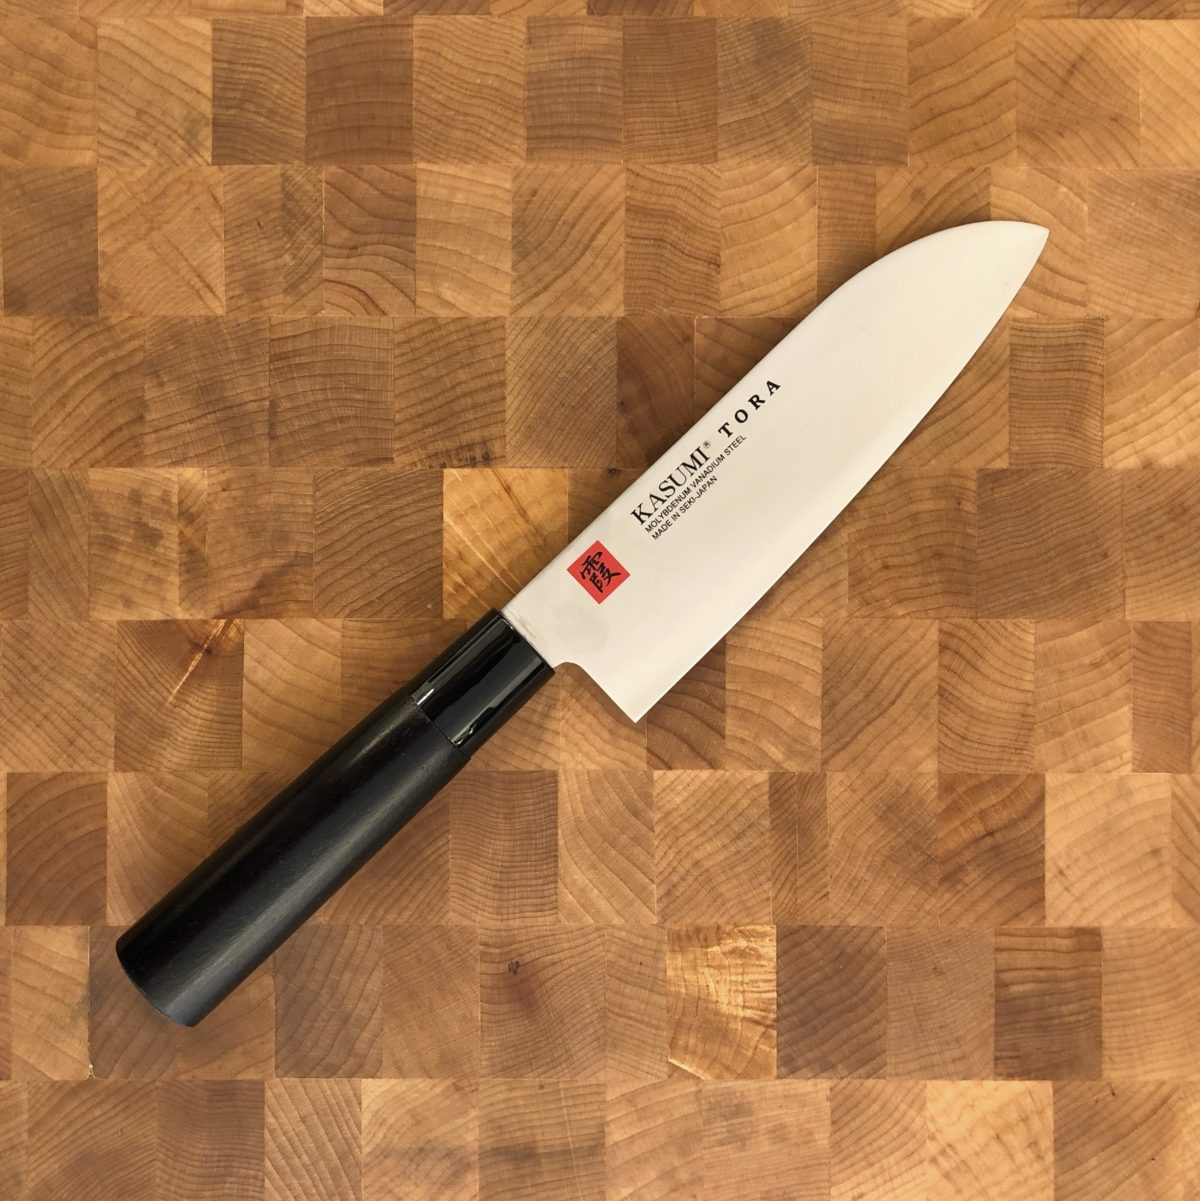 Японское качество кухонных ножей на фото
				